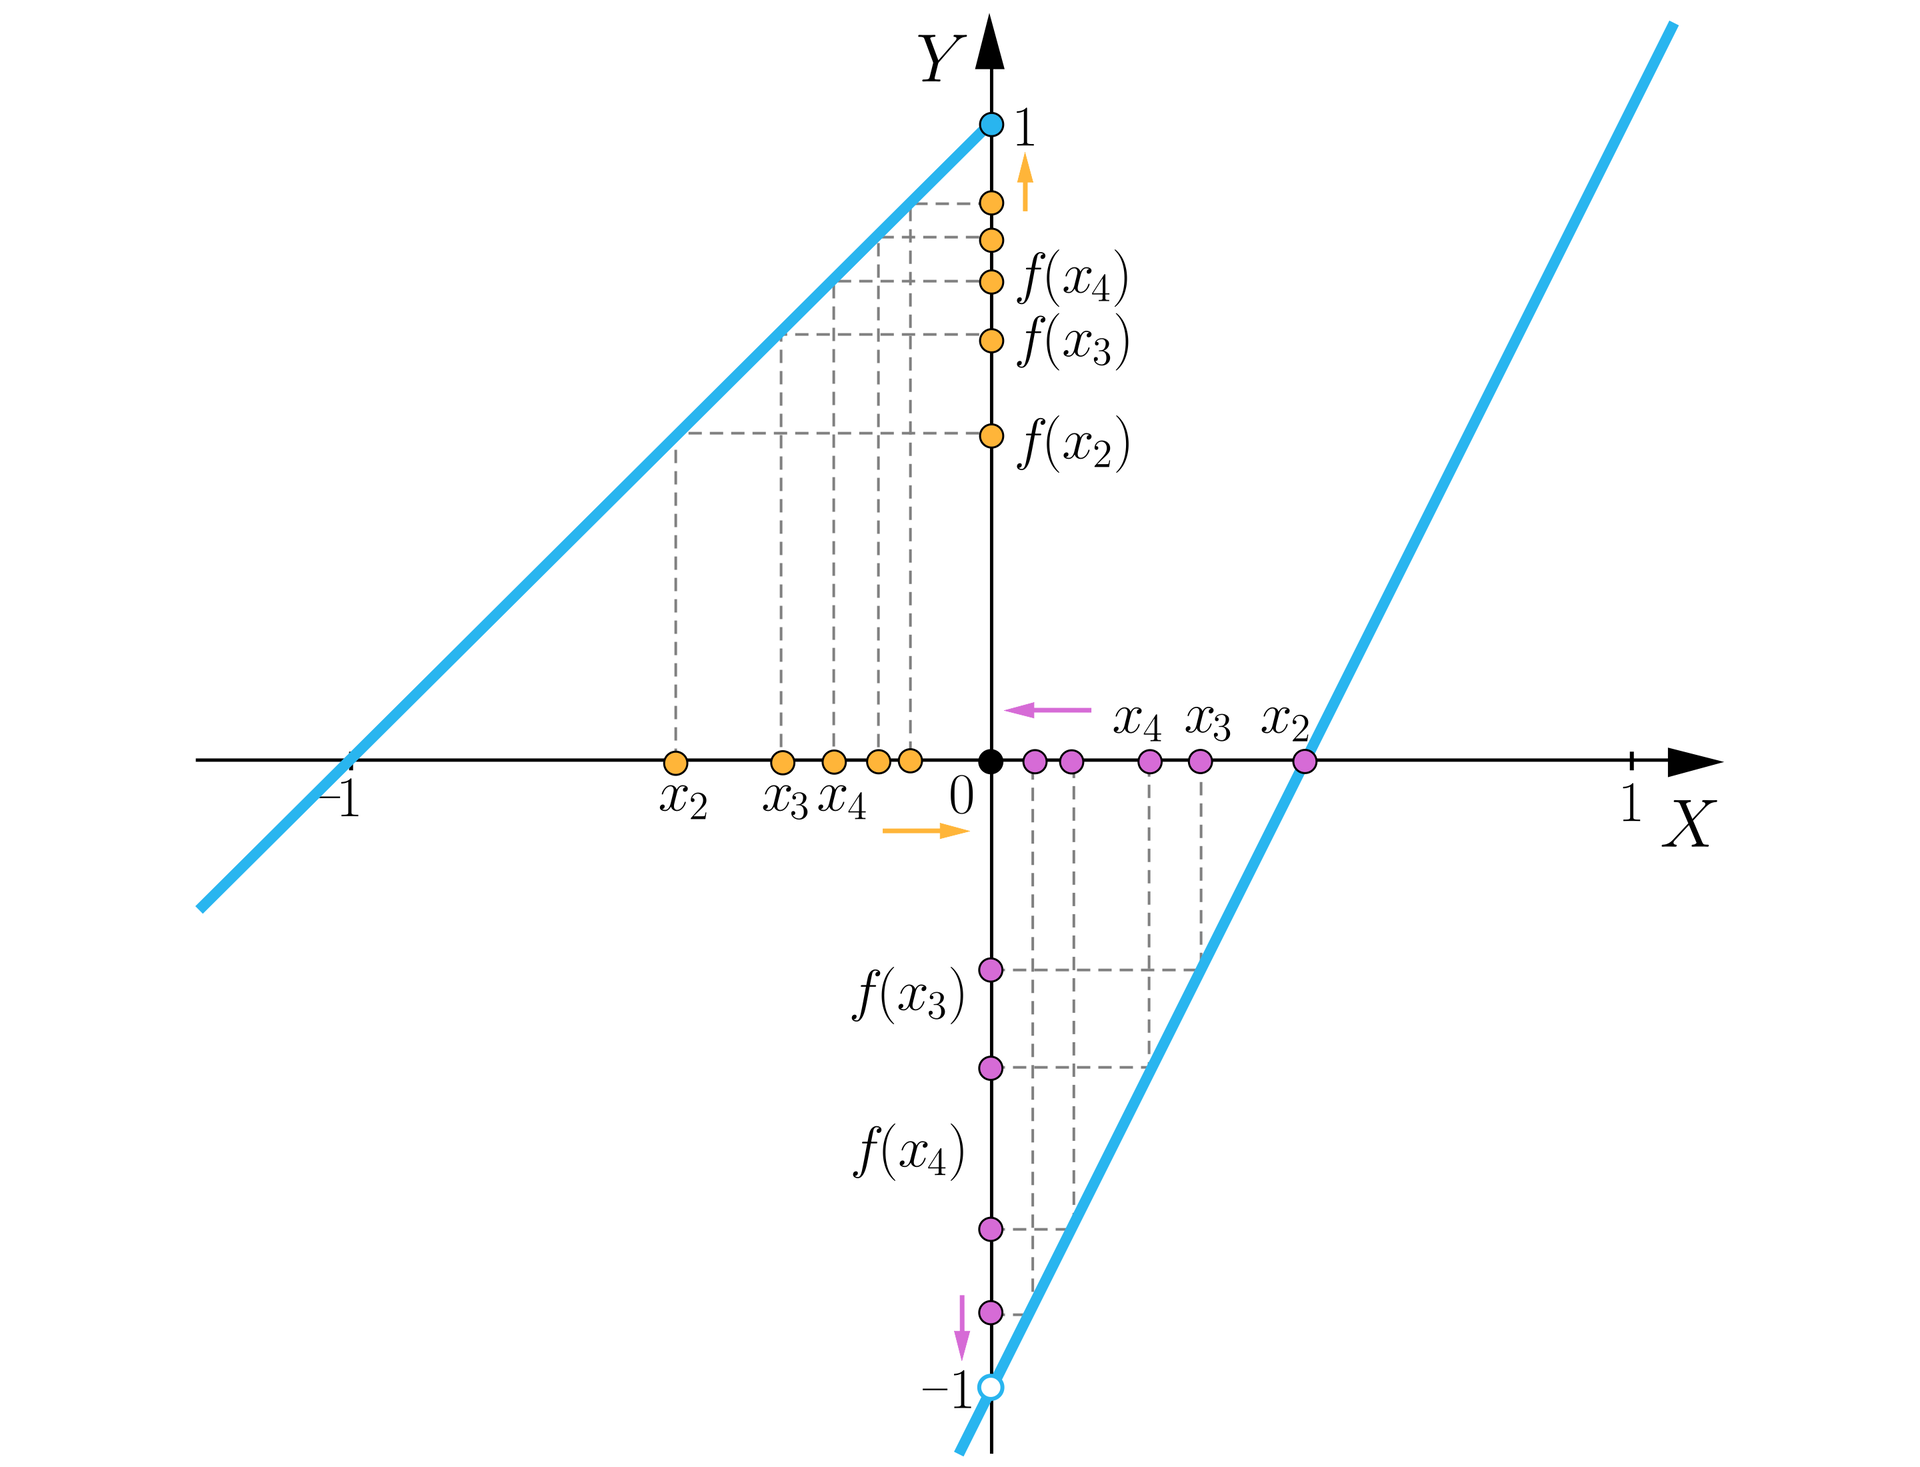 Ilustracja przedstawia układ współrzędnych z poziomą osią X od minus jeden do jeden oraz z pionową osią Y od minus jeden do jeden. Na obu osiach zaznaczono pewne punkty. Na płaszczyźnie narysowano trzy półproste. Pierwsza półprosta ma początek w punkcie 0;1, przechodzi też przez punkt -1;0. Druga półprosta ograniczona jest punktem 0;-1 i biegnie dalej ukośnie w stronę nieskończoności w trzeciej ćwiartce układu. Ostatnie półprosta ograniczona jest tym samym punktem, co druga, czyli punktem 0;-1 i jest swego rodzaju przedłużeniem drugiej półprostej. Biegnie ona ukośnie przez ćwoartkę drugą i pierwszą, przecinając poziomą oś. Punkty zaznaczone na osiach są podzielone na dwie grupy: pomarańczowe, które są rzutami punktów należących do pierwszej półprostej i fioletowe, będące rzutami punktów należących do trzeciej półprostej. Argumenty pomarańczowe znajdują się na ujemnej półosi OX i zagęszczają się w kierunku zera, co oznaczono symboliczną pomarańczową poziomą strzałką skierowaną w stronę zera. Wartości dla tych argumentów znajdują się na dodatniej półosi OY i dążą one do jedynki, co również oznaczono symboliczną strzałką skierowaną w stronę tej wartości. Druga grupa punktów to punkty fioletowe. Argumenty z tej grupy zagęszczają się również w kierunku zera, jednak znajdują się one na dodatniej półosi OX, co oznaczono strzałką. Wartości fioletowe dążą do minus jeden i znajdują się tylko na ujemnej półosi OY, co także oznaczono strzałką.